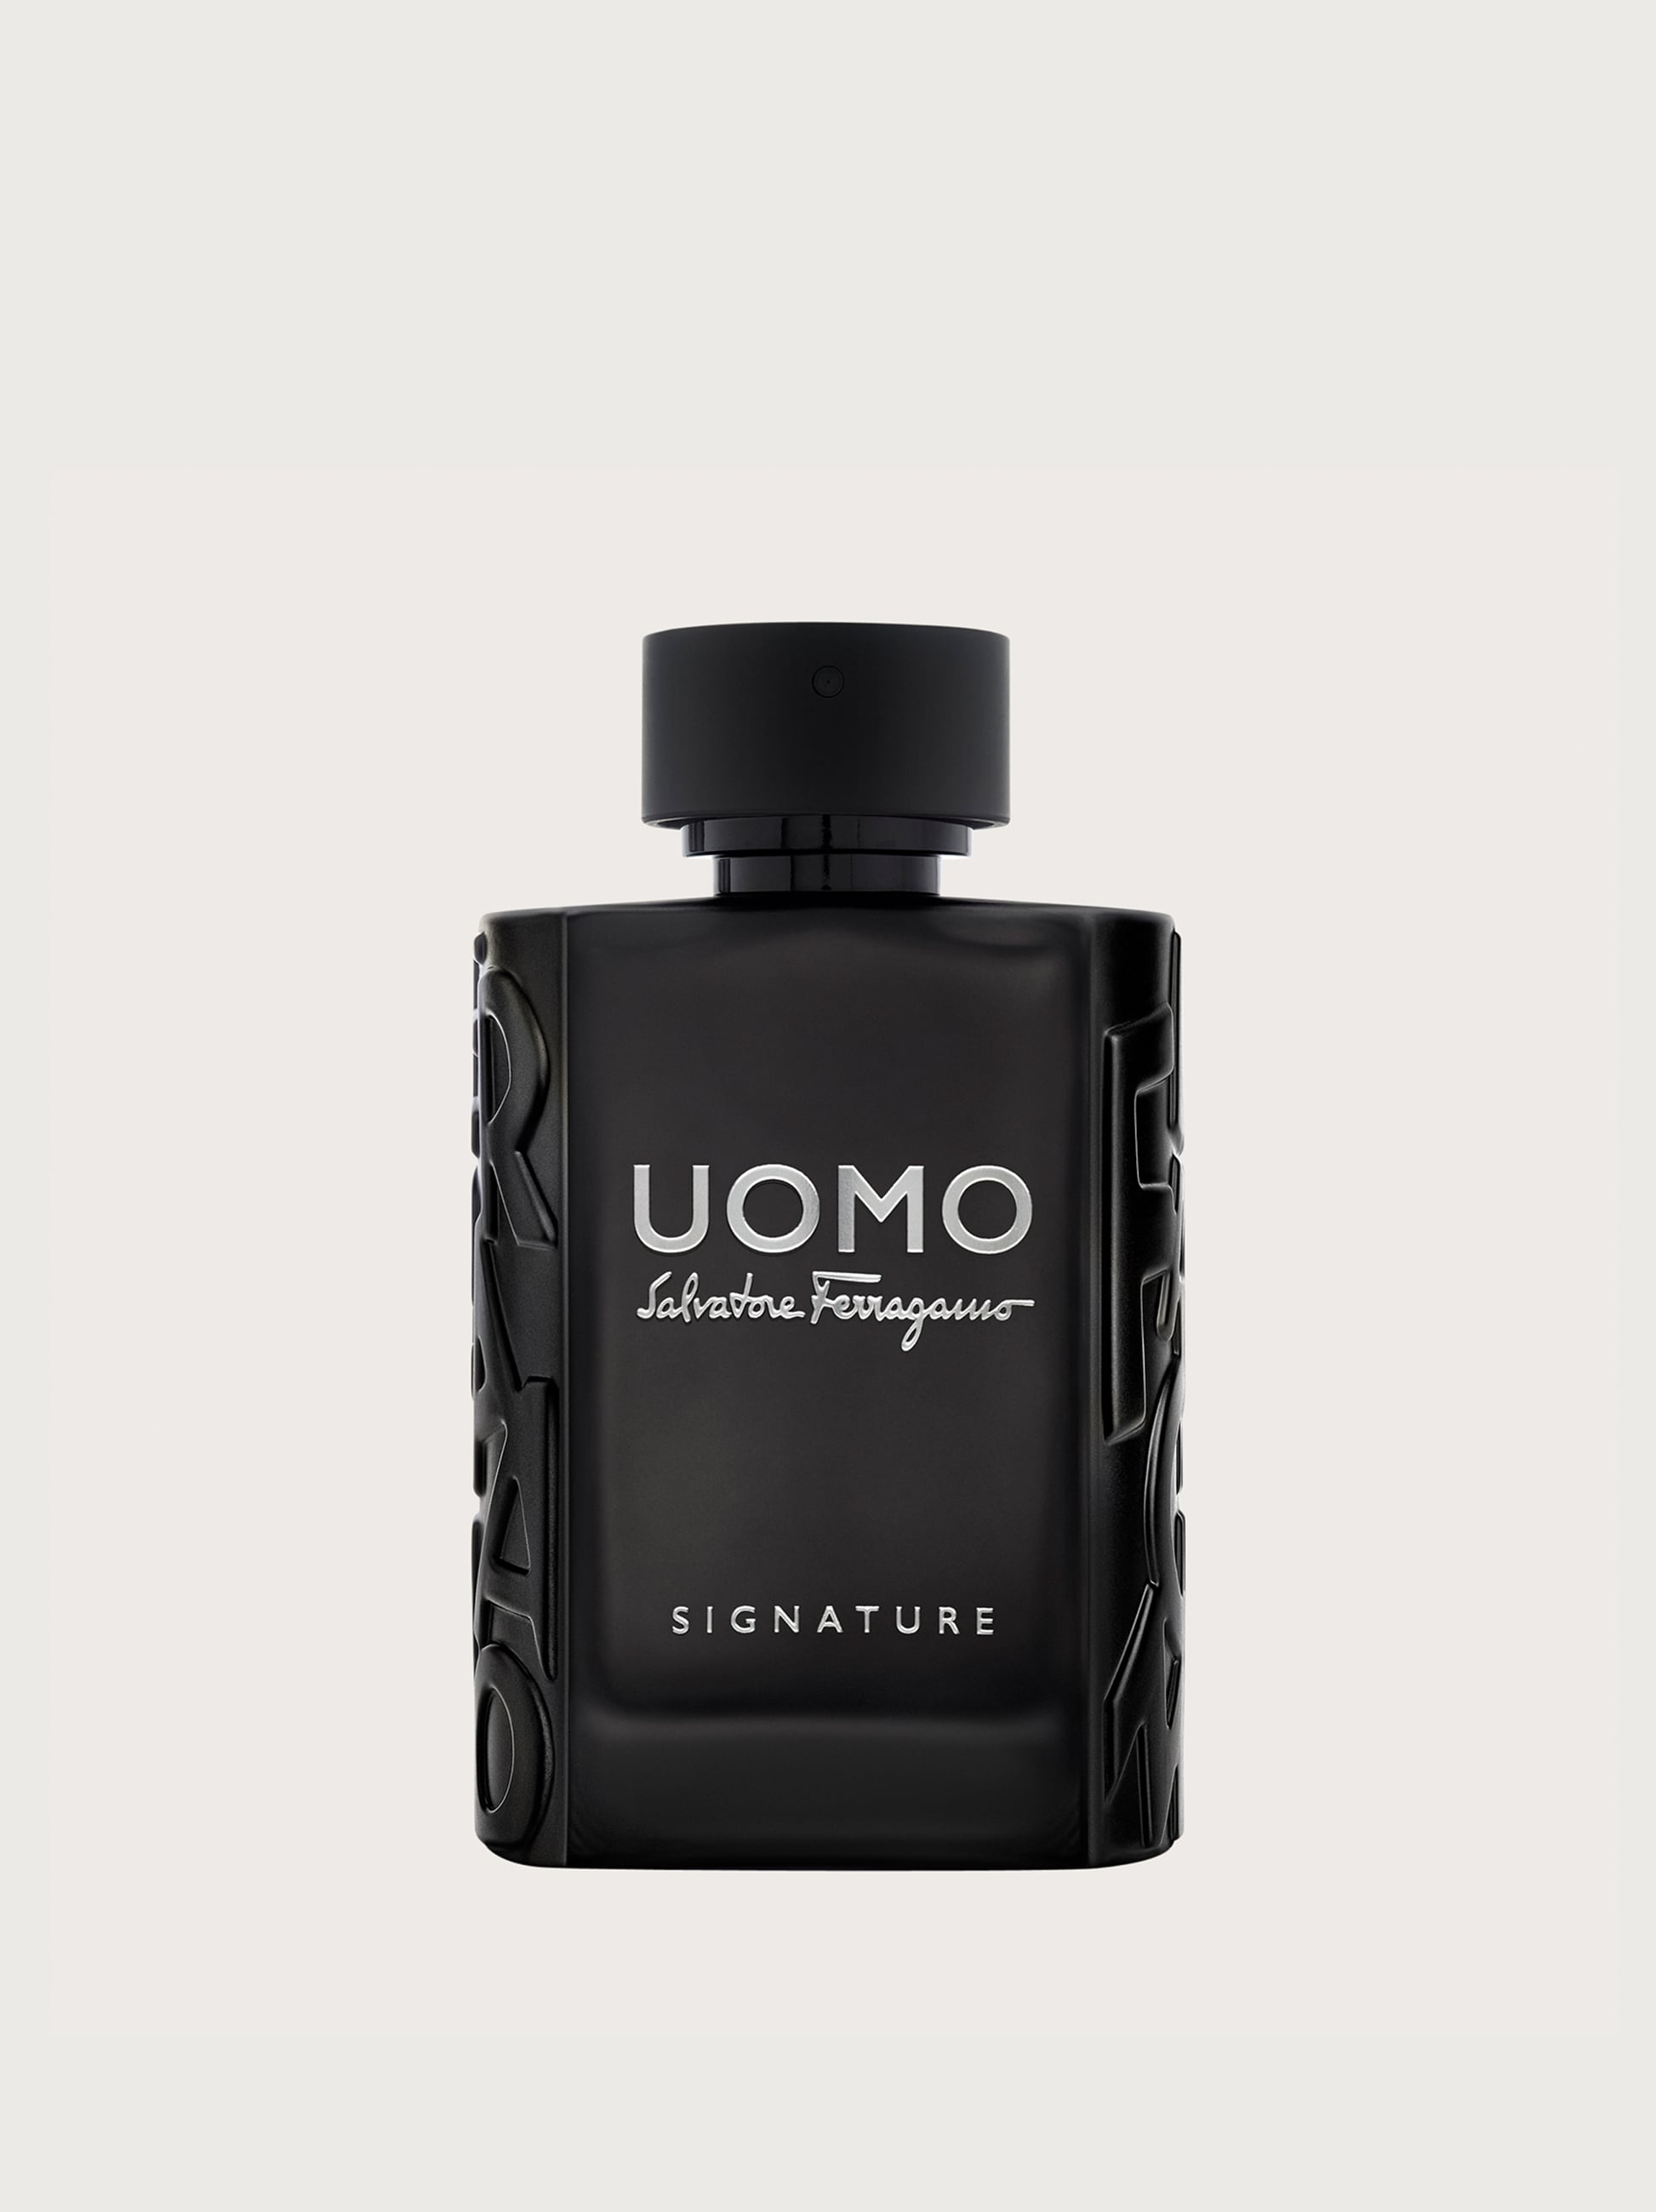 Ferragamo Uomo Signature EDP for Men - Perfume Planet 